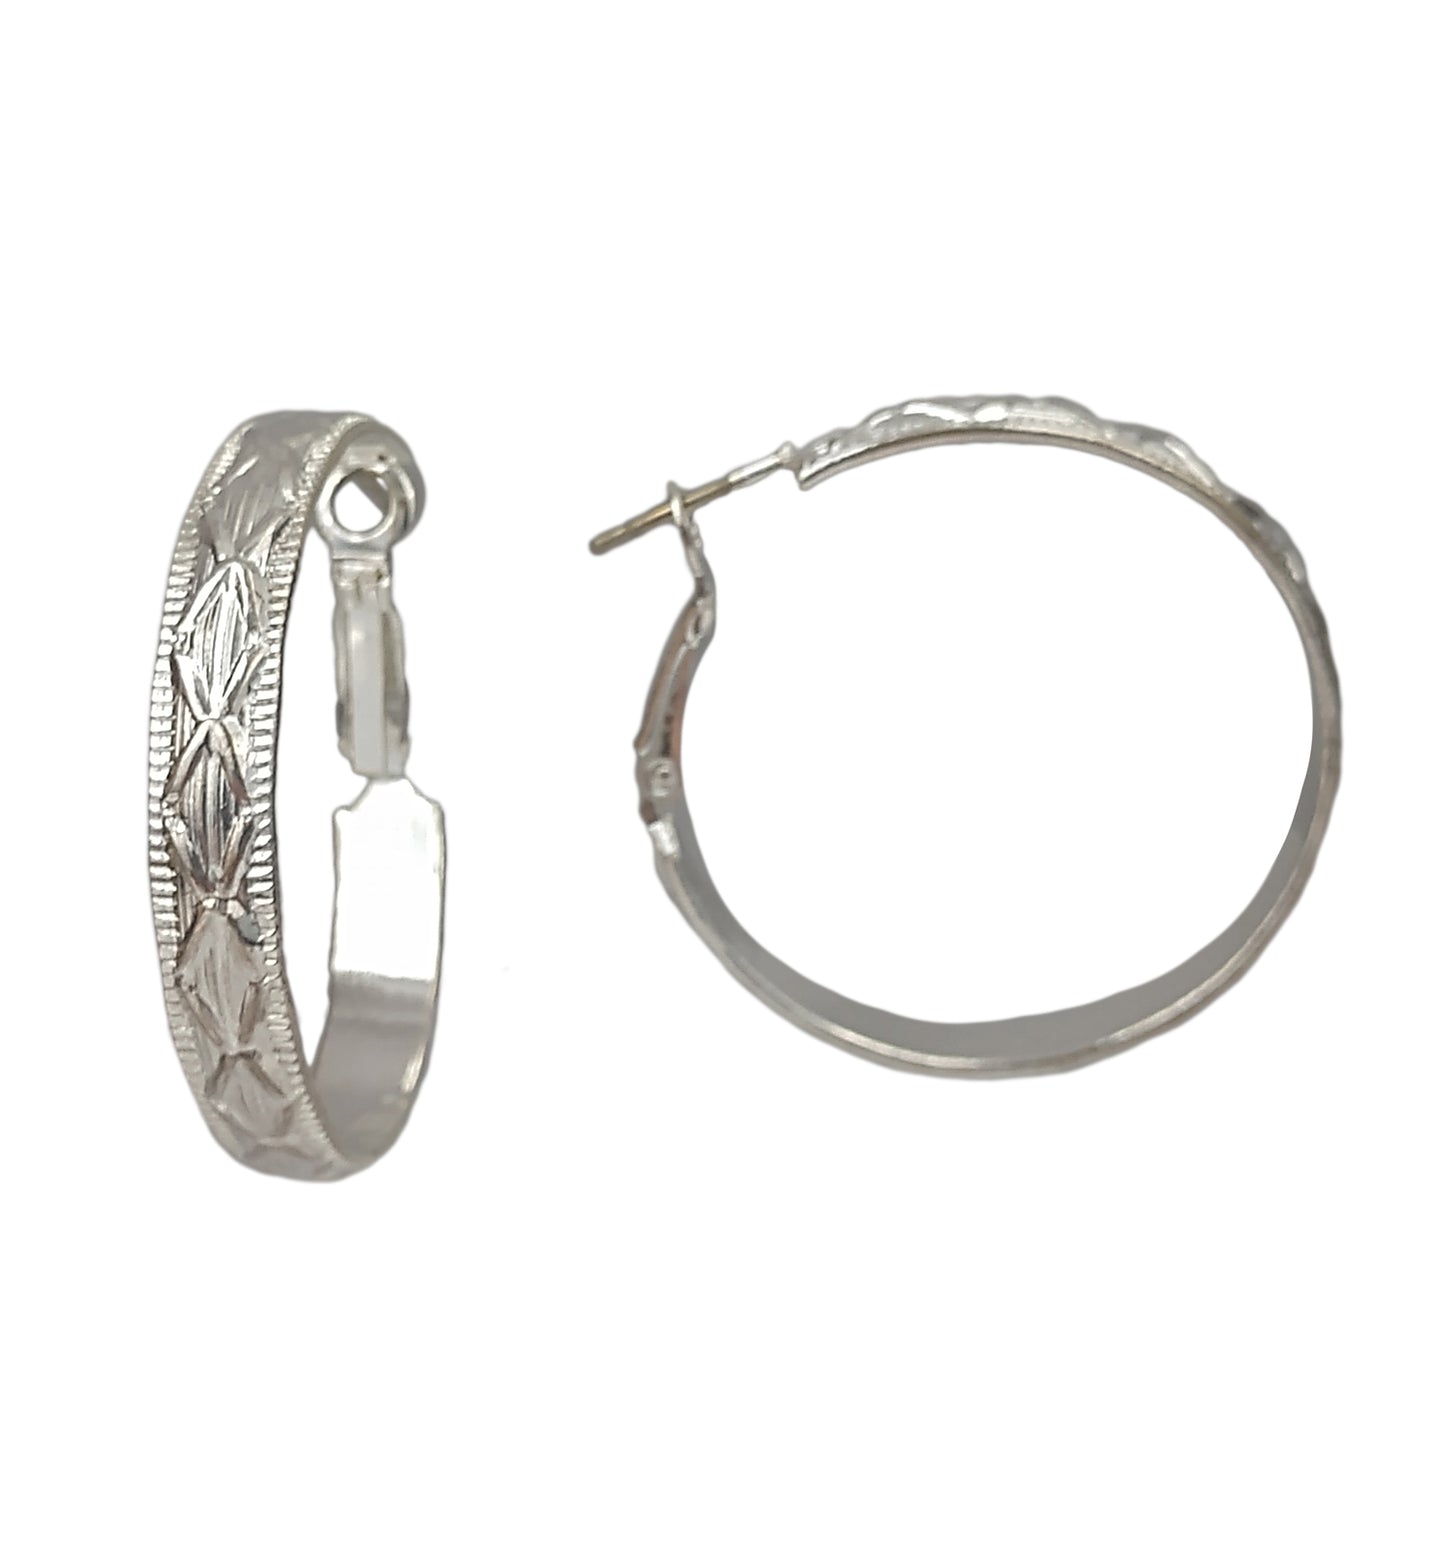 Silver Tone Cross Design Textured Metal Round Hoop Earrings Pierced 1 3/8"